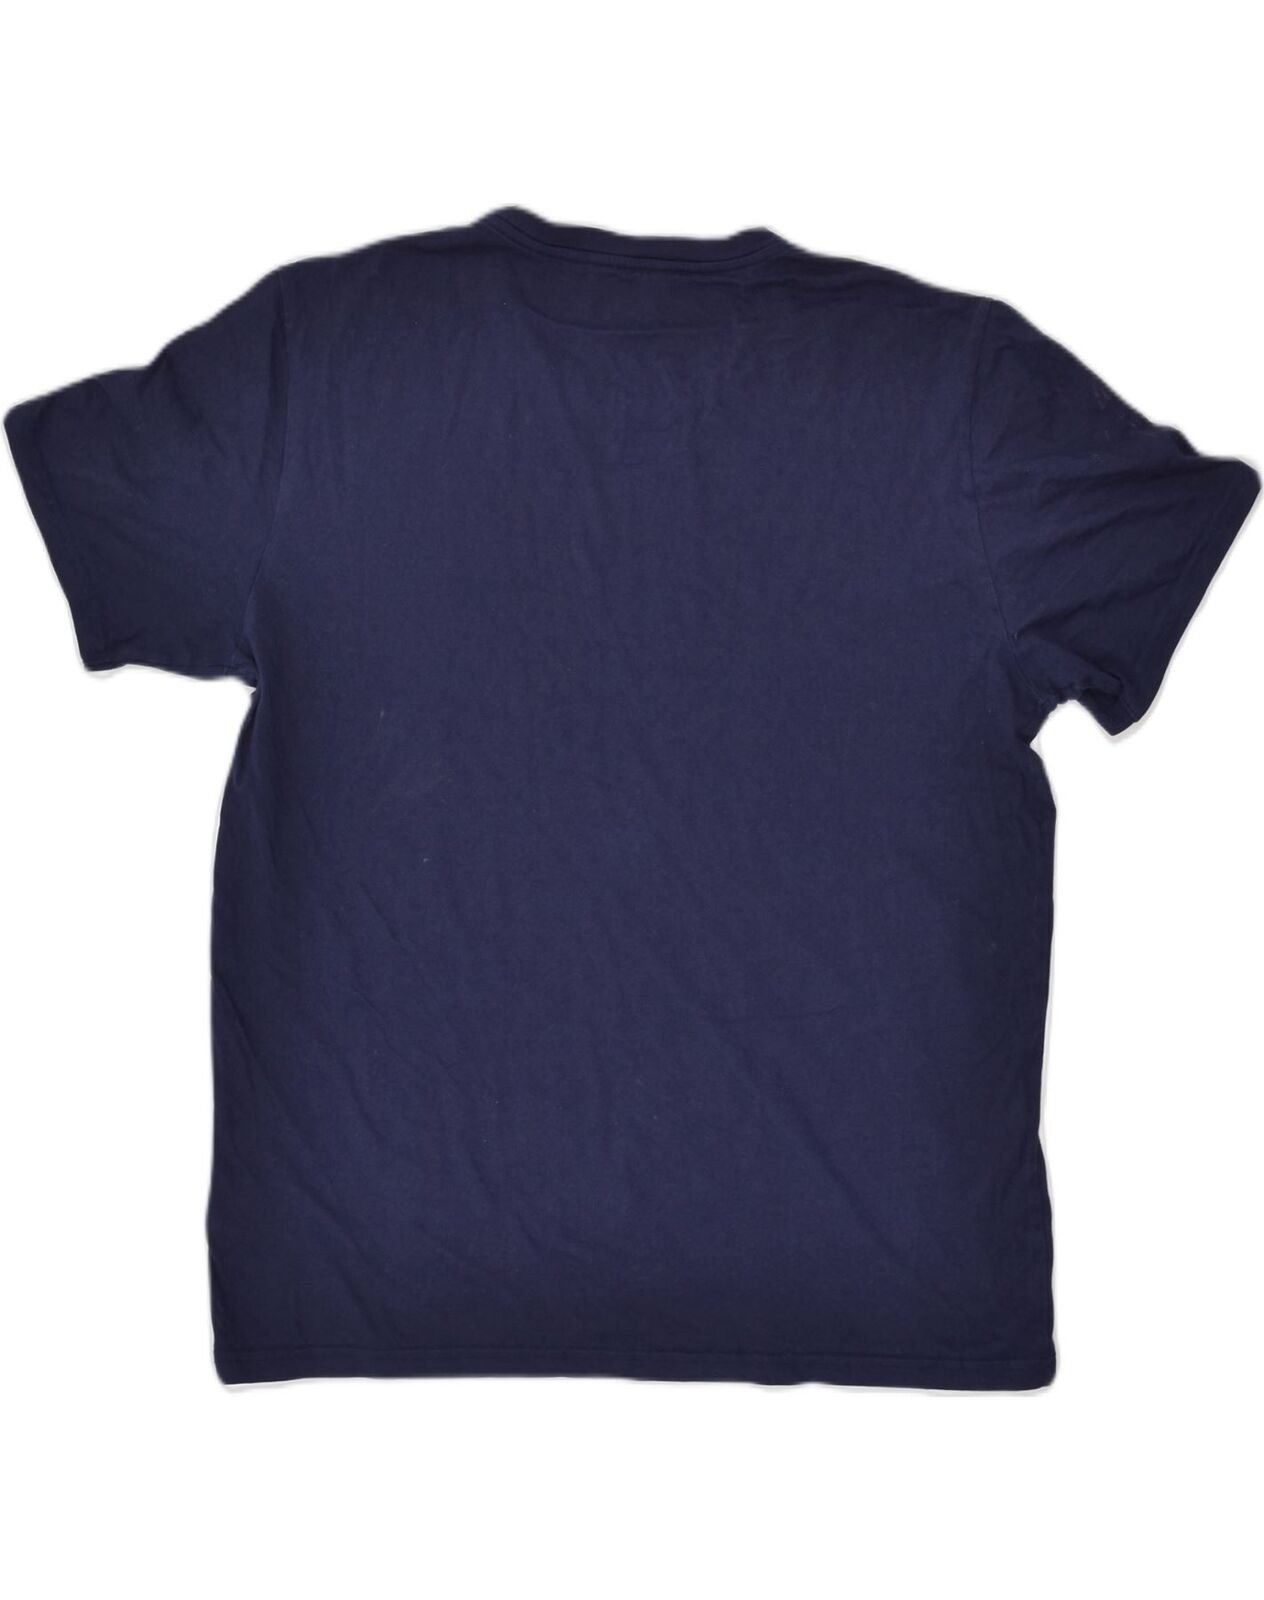 POLO RALPH LAUREN Mens Slim Fit T-Shirt Top Large Navy Blue Cotton AL13 ...